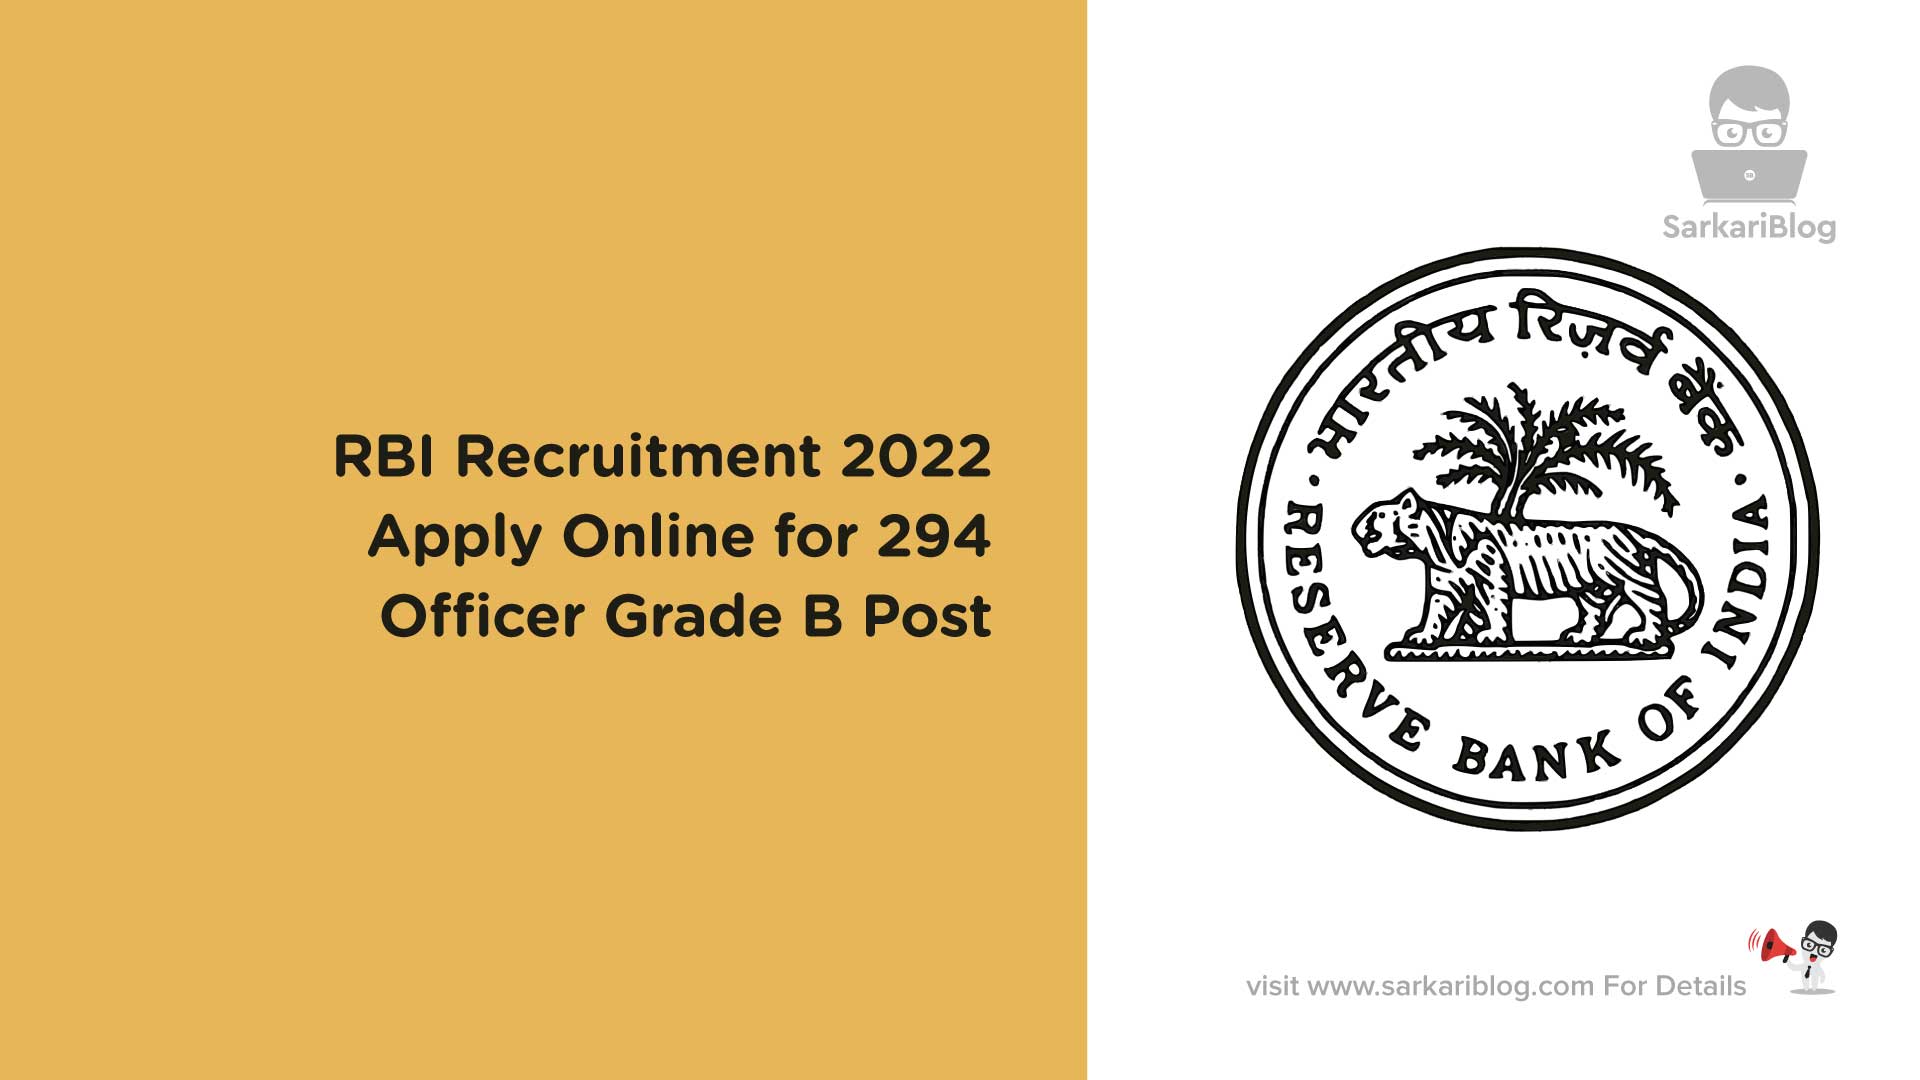 RBI Recruitment 2022 - Apply Online for 294 Officer Grade B Post